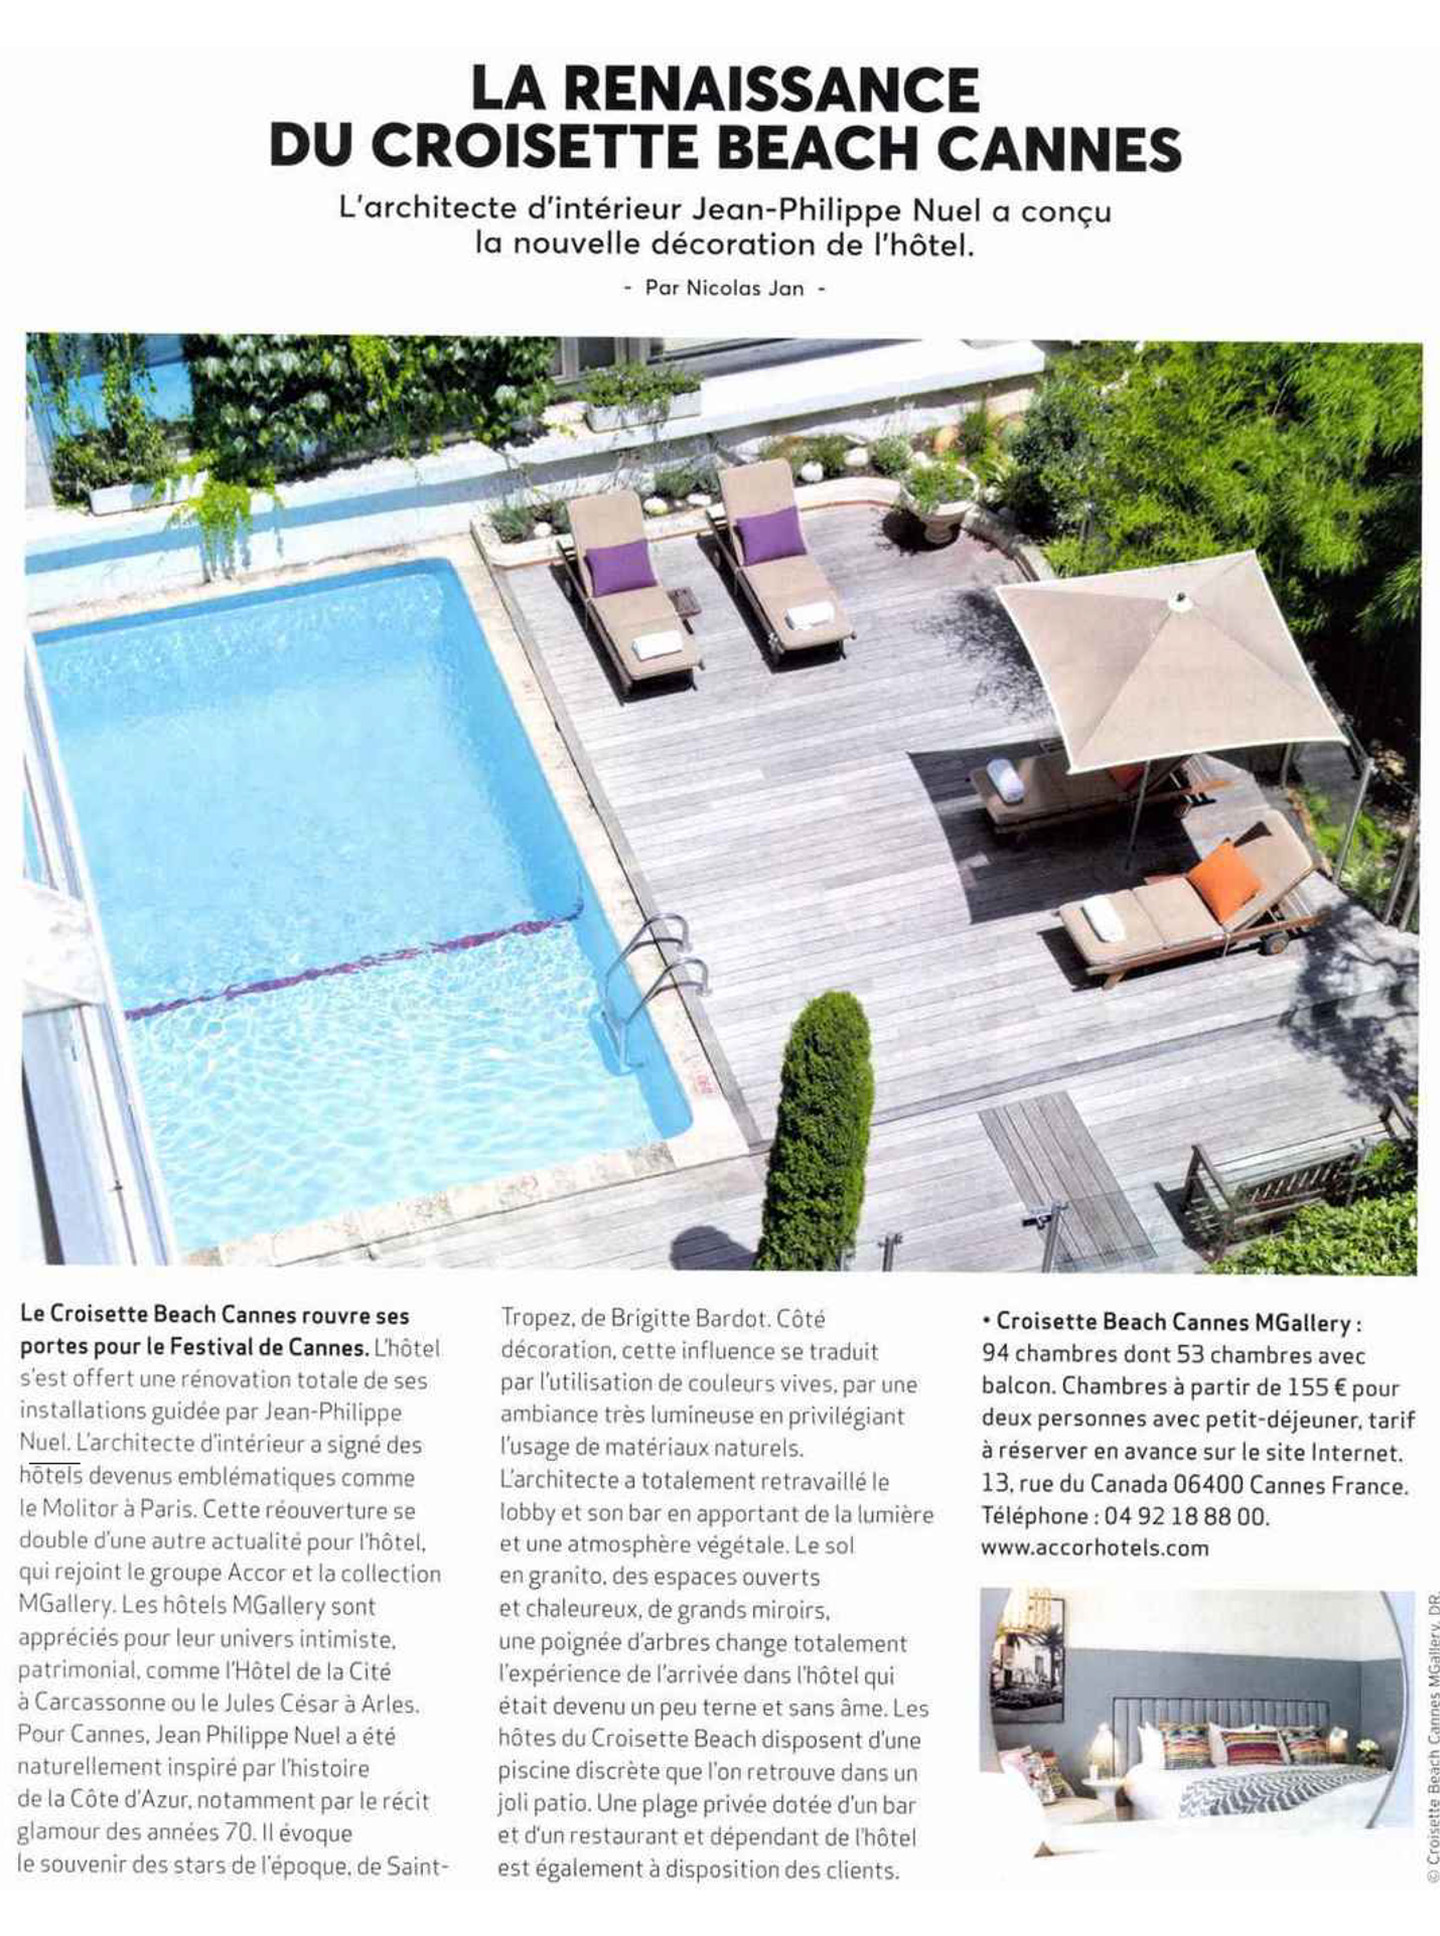 Article sur le Croisette Beach Cannes réalisé par le studio jean-Philippe Nuel dans le magazine desirs de voyages, nouvel hotel lifestyle, architecture d'intérieur de luxe